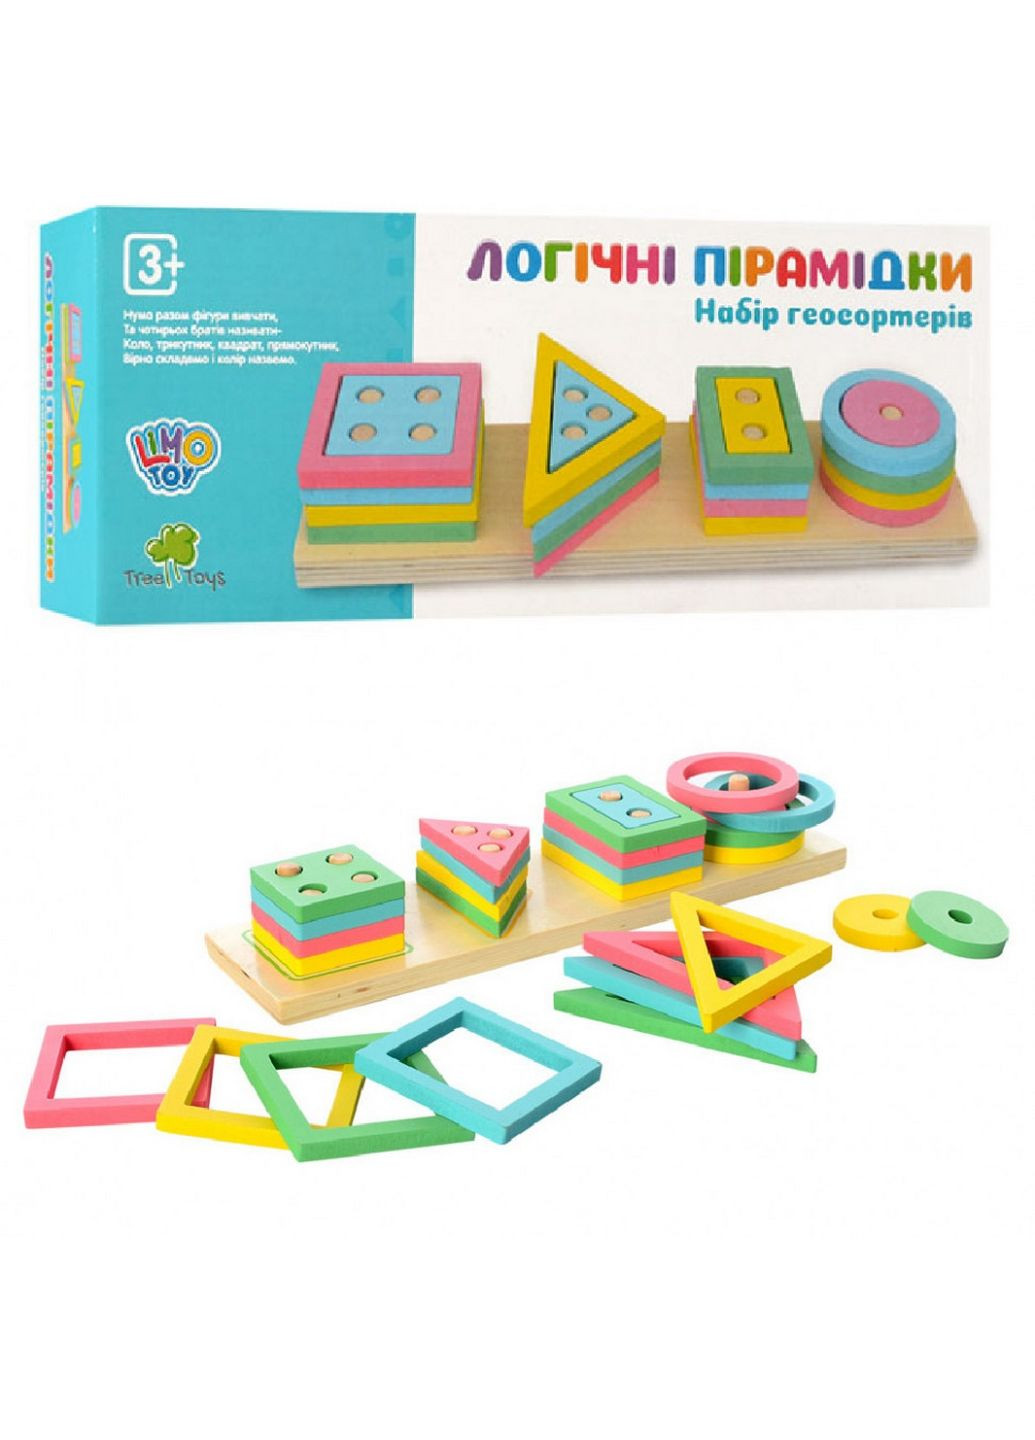 Развивающая игрушка геометрика деревянная Limo Toy (282586797)